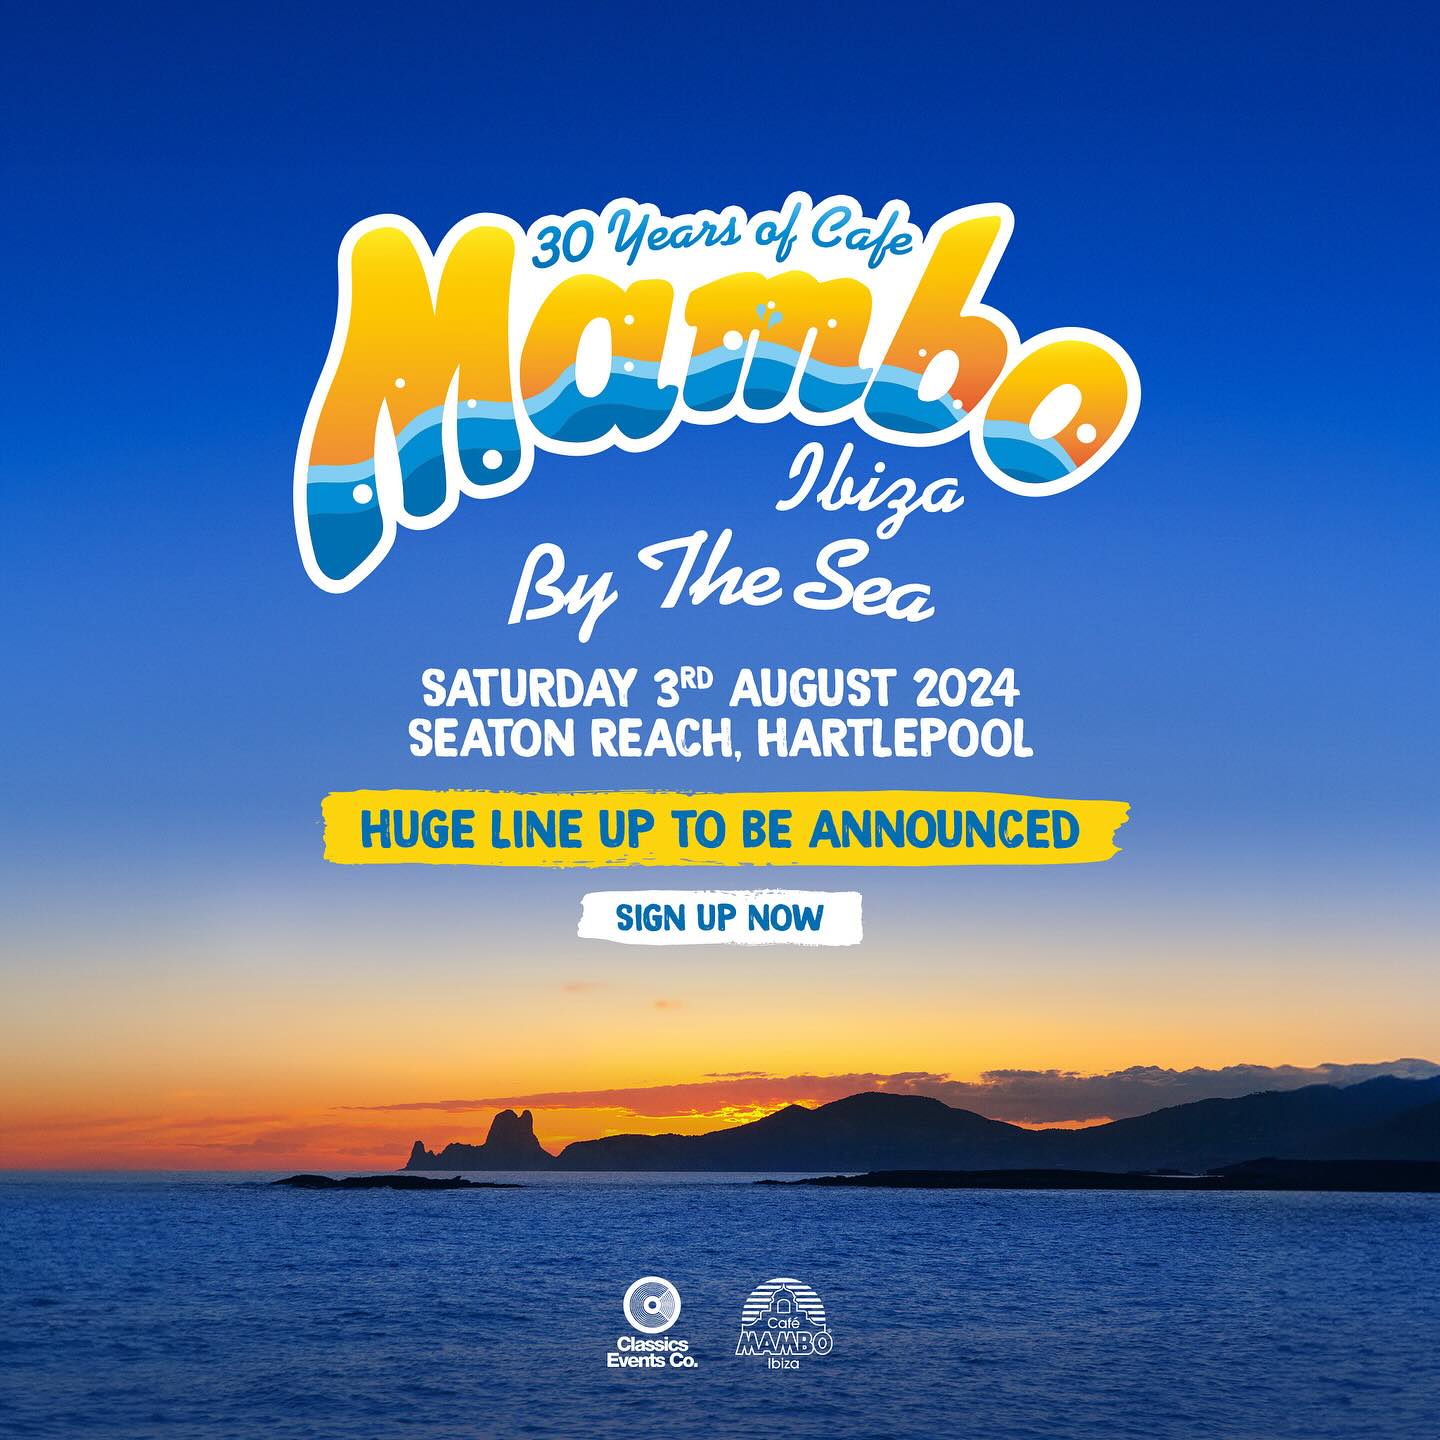 Cafe Mambo Ibiza By The Sea – Festival du 30e anniversaire